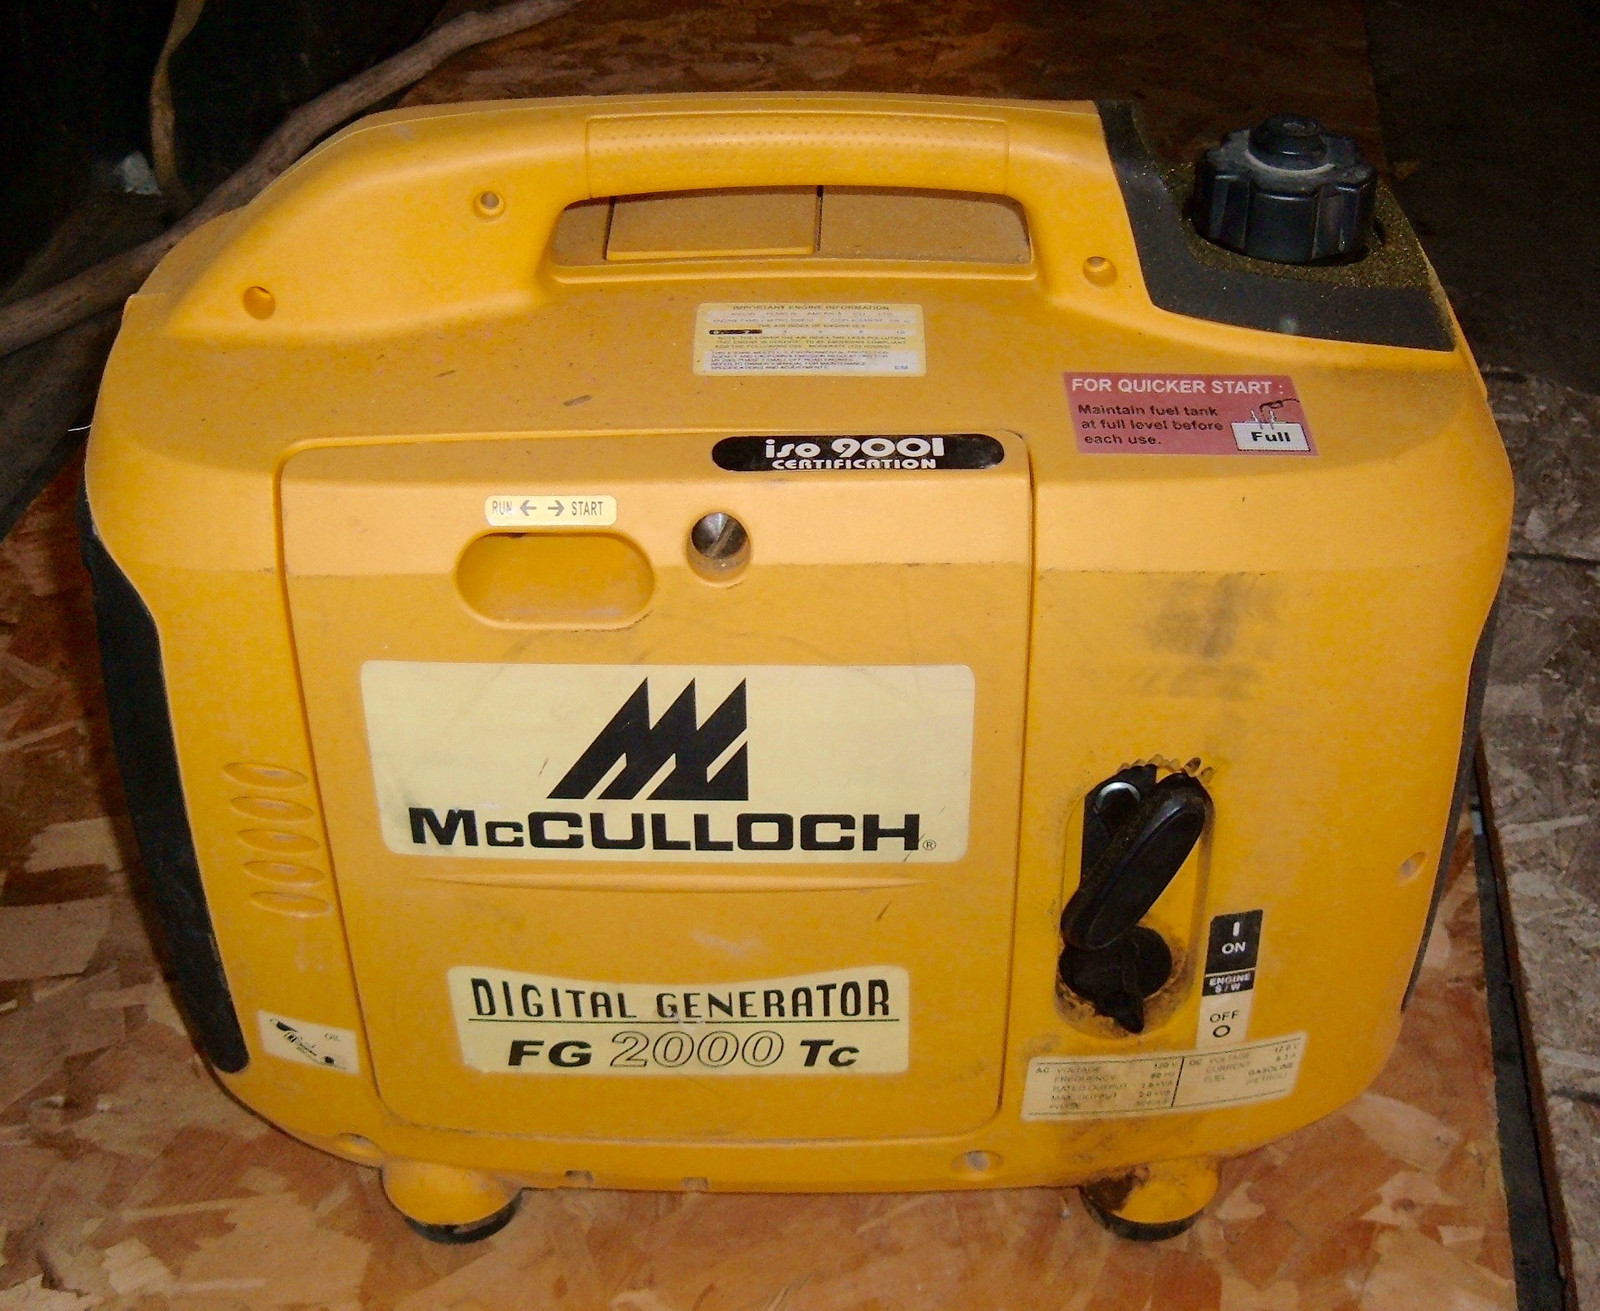 Replacing Fuel Pump in a Kipor IG2000 or McCulloch FG2000 Generator